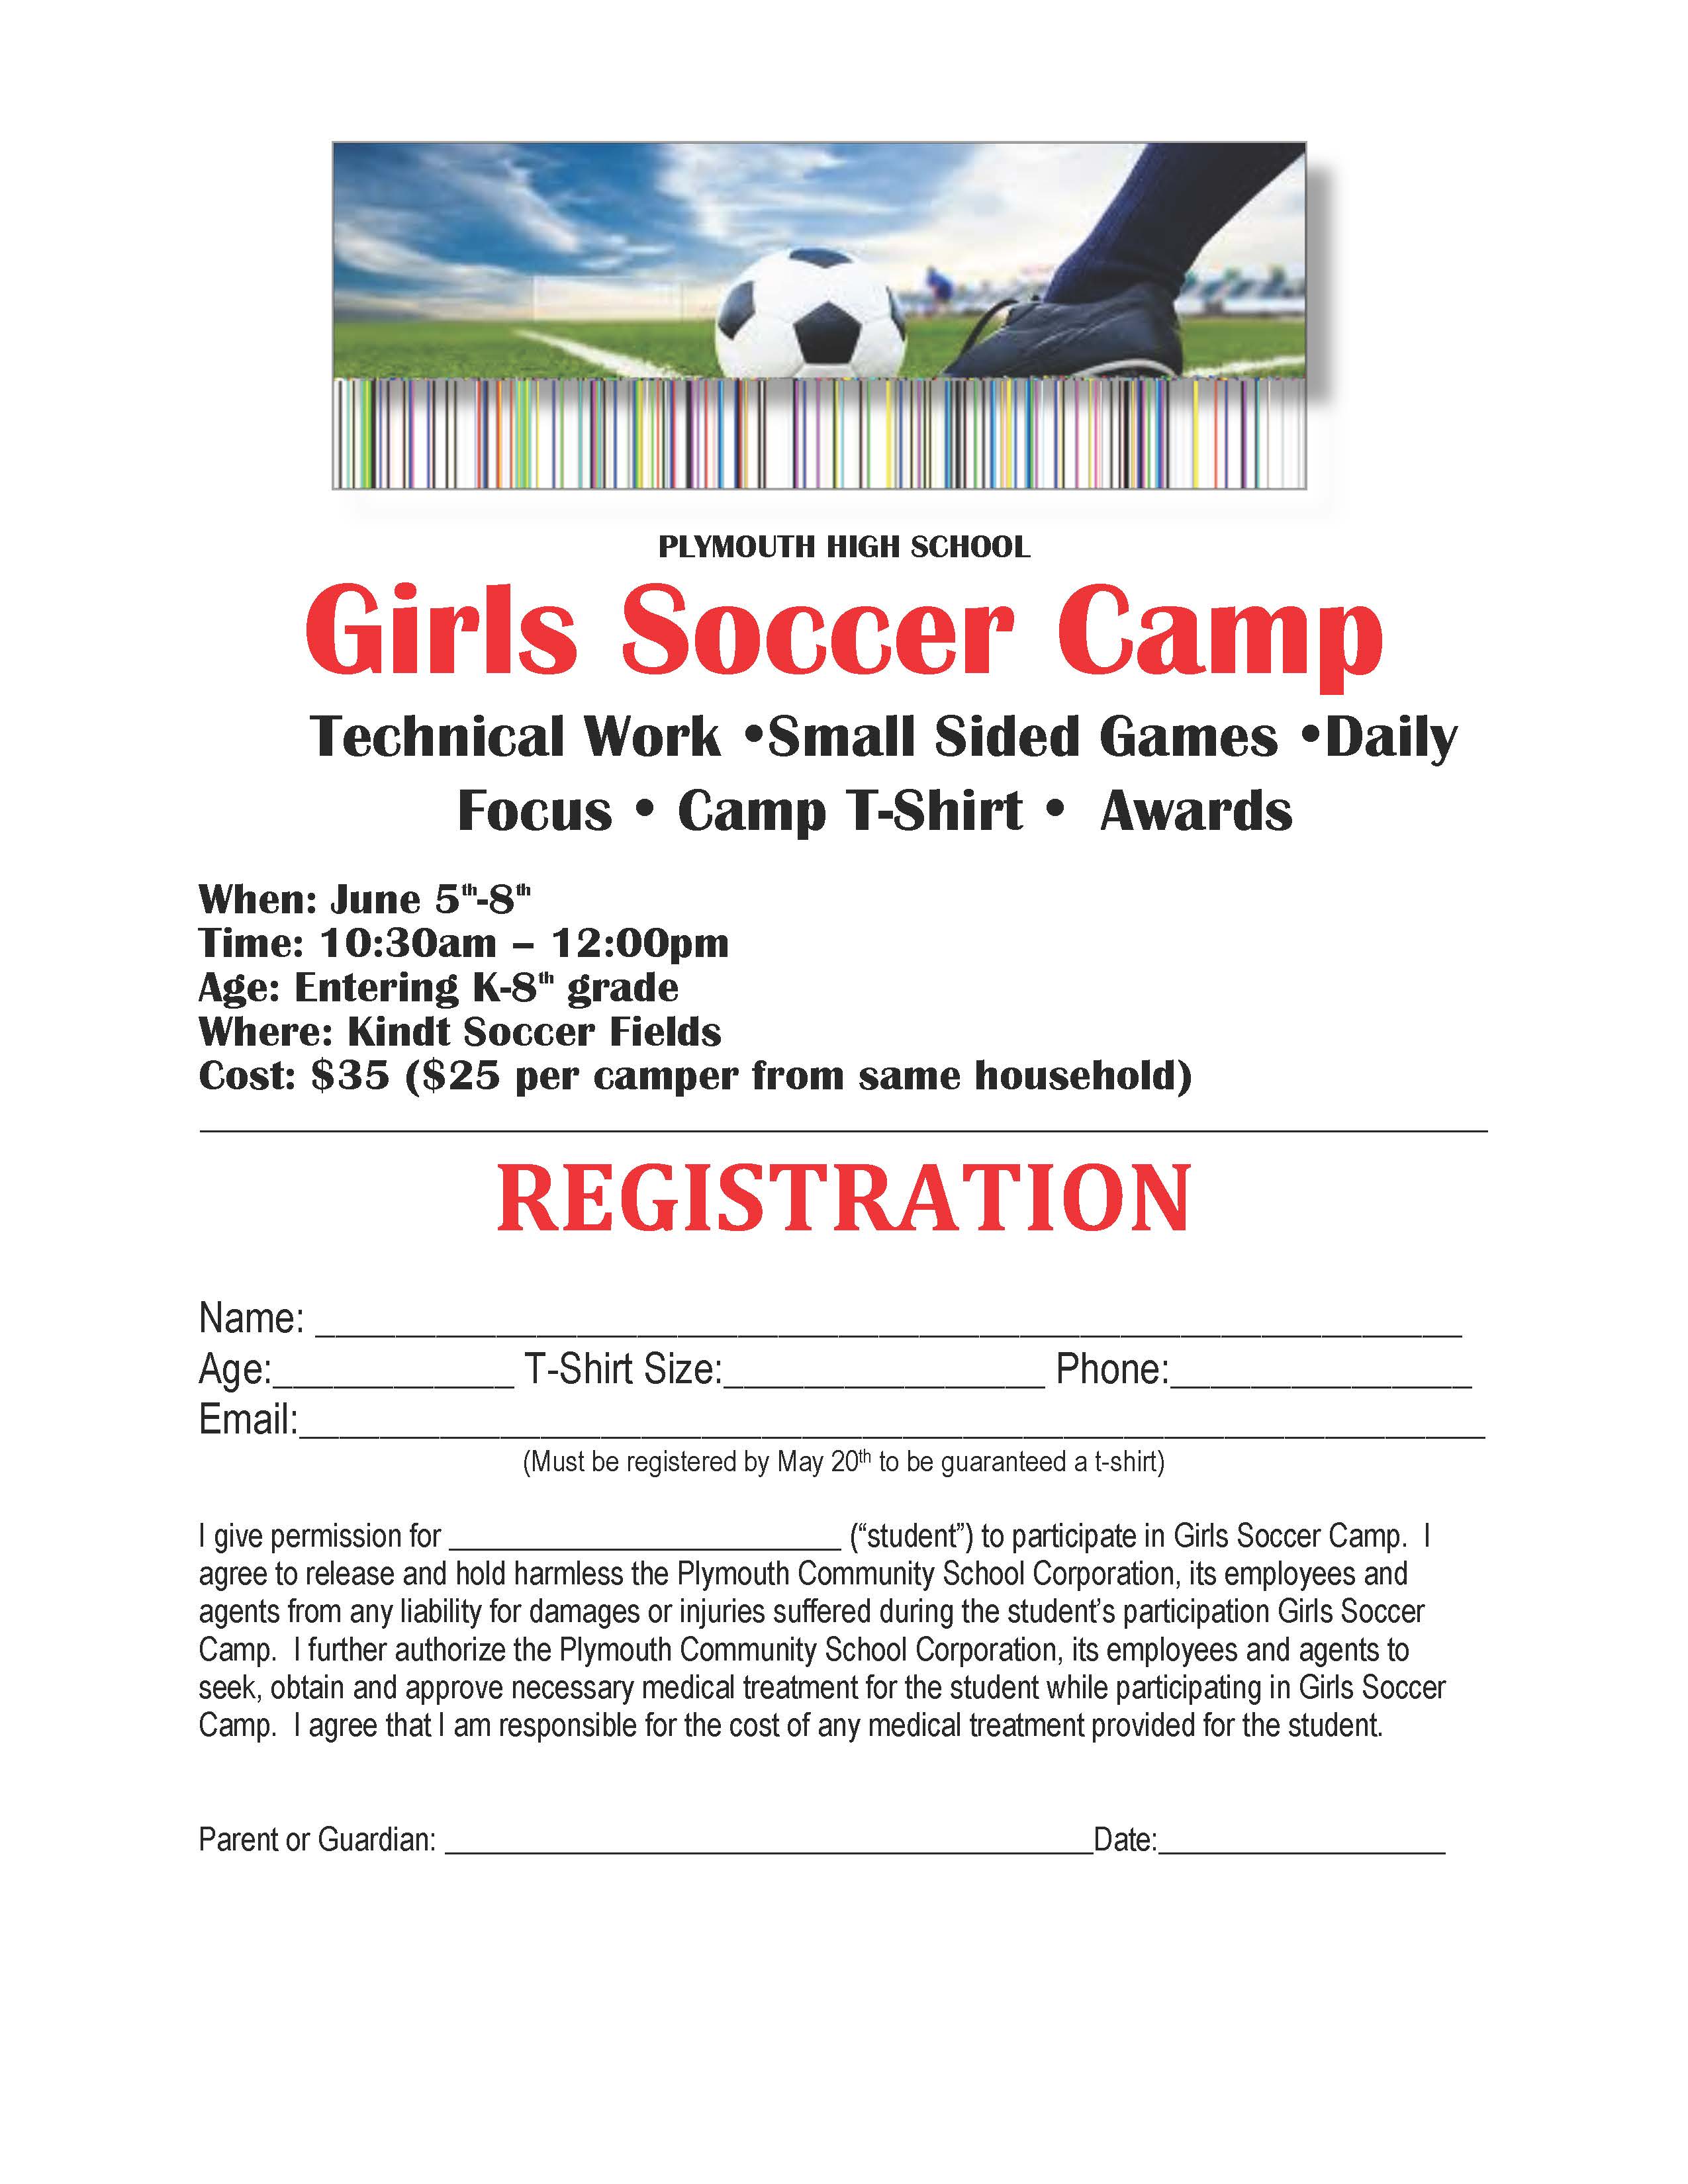 Girls Soccer Camp